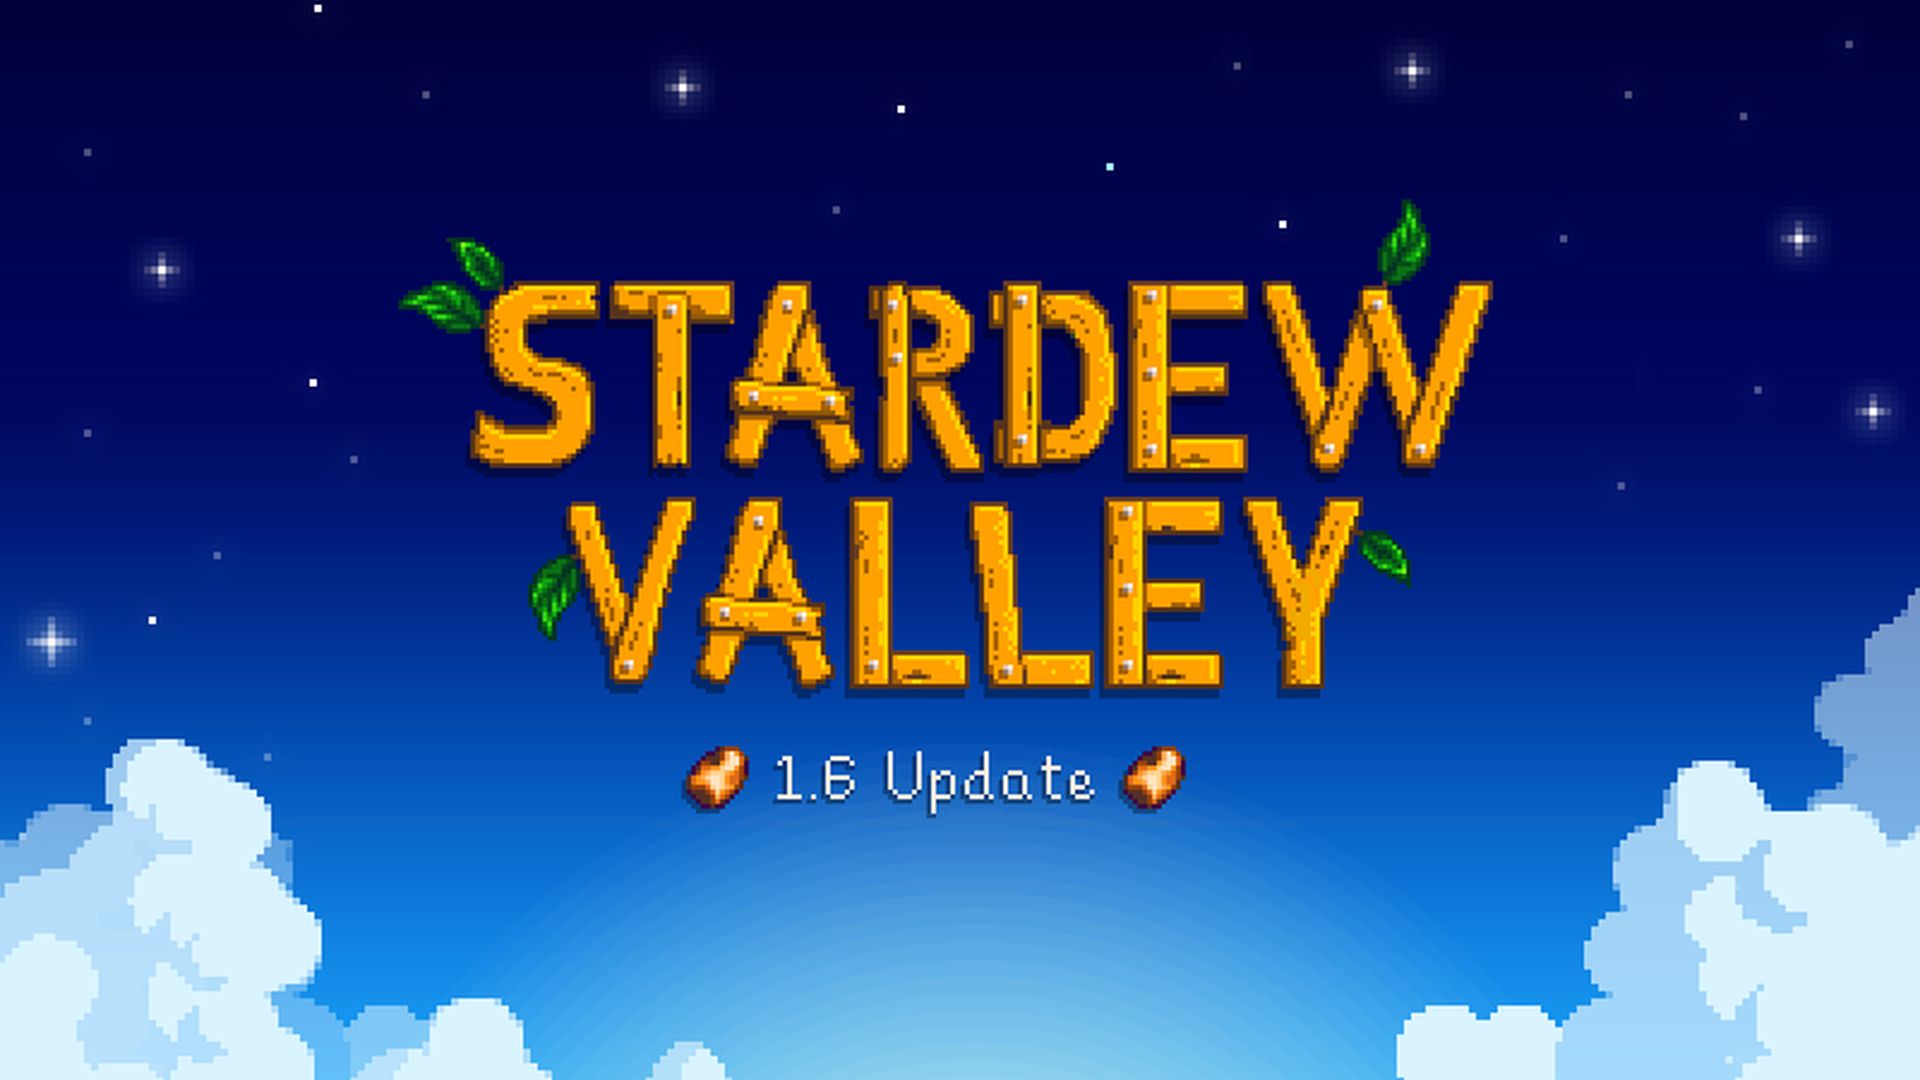 Stardew Valley 1.6 アップデート: コンソール プレーヤーはいつから楽しみに参加できるようになりますか?